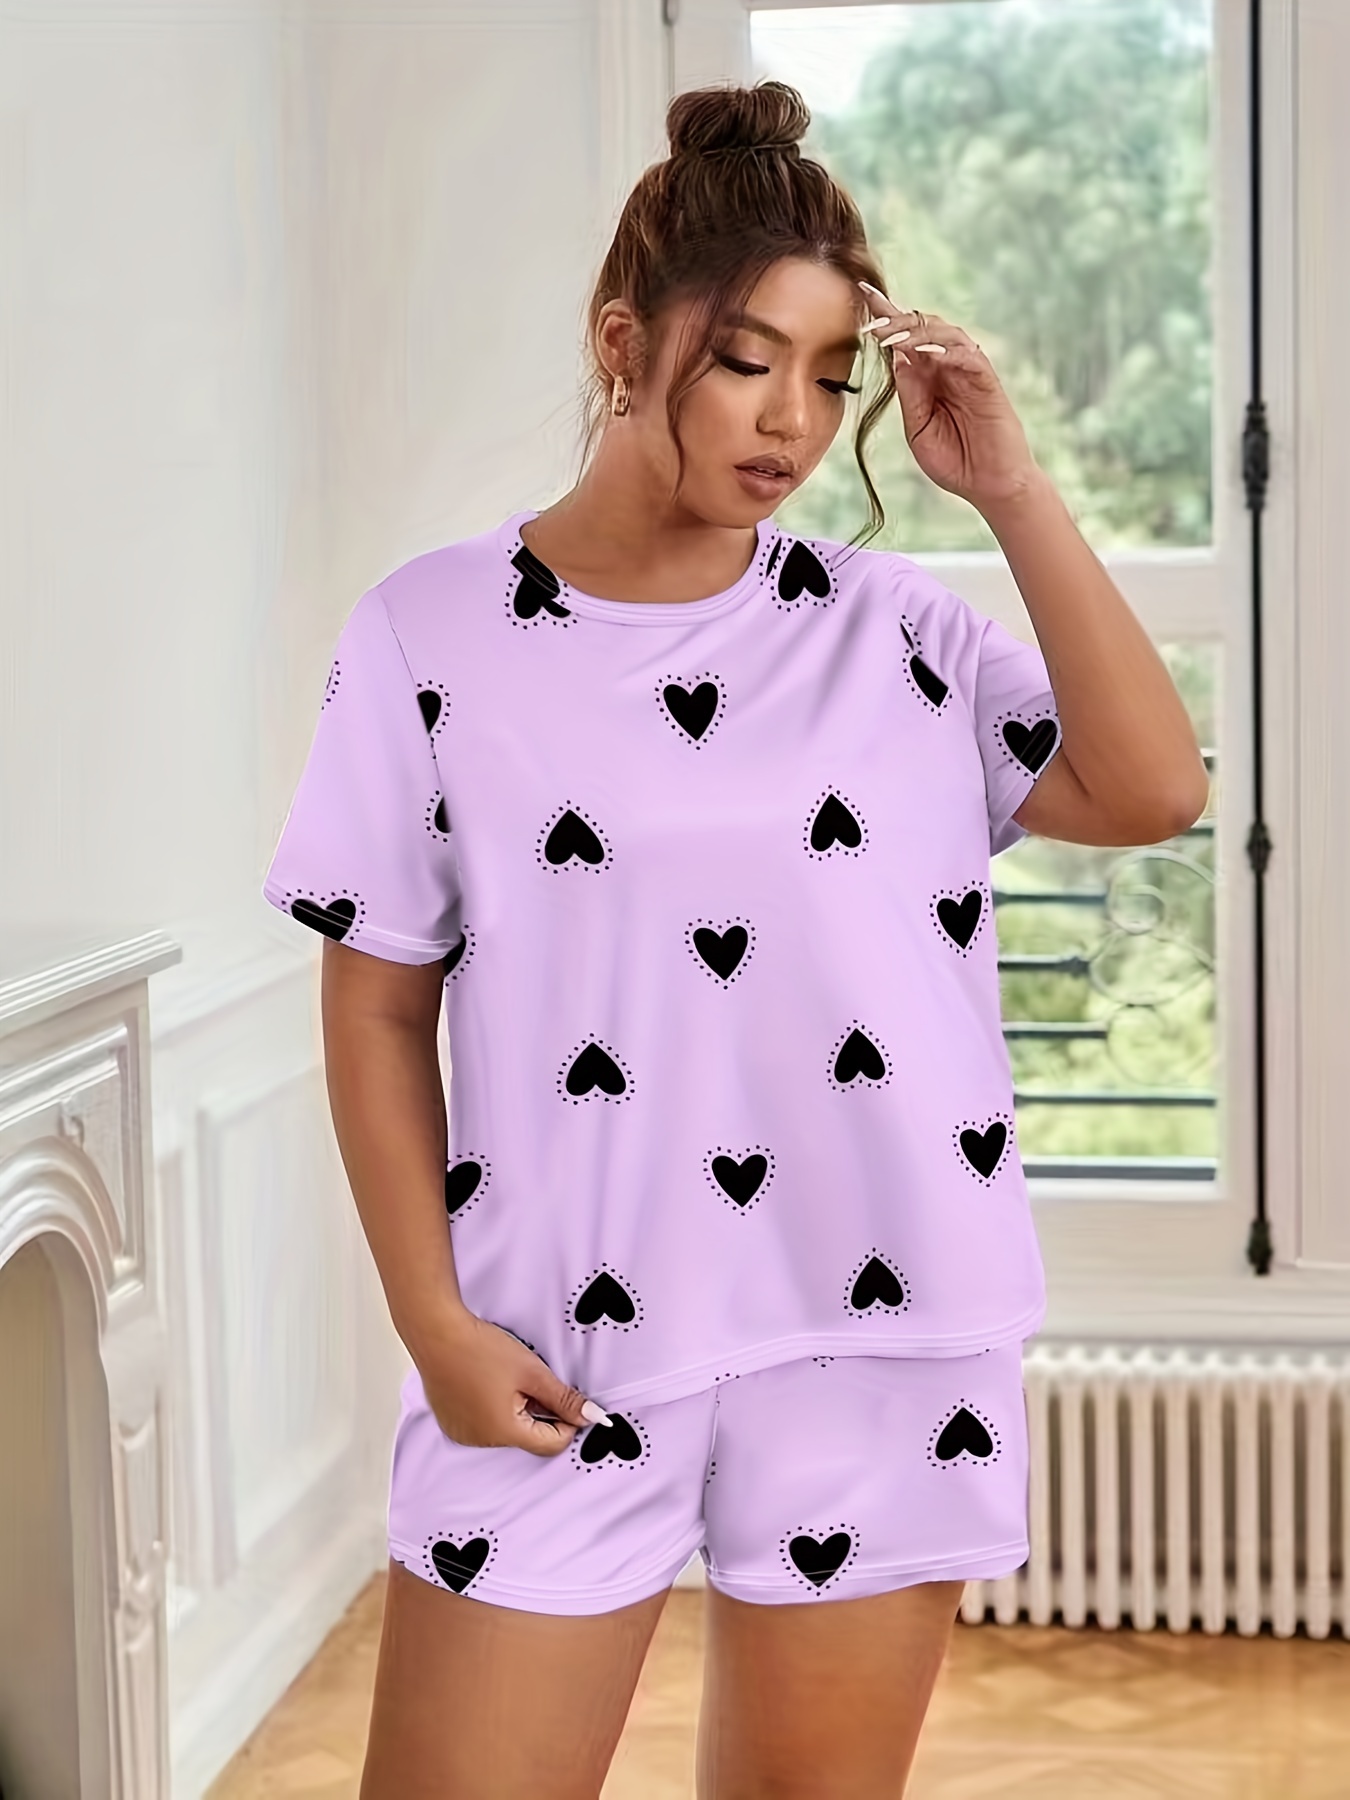  Womens Pjs Shorts Sets Cute Pajama Sets Short